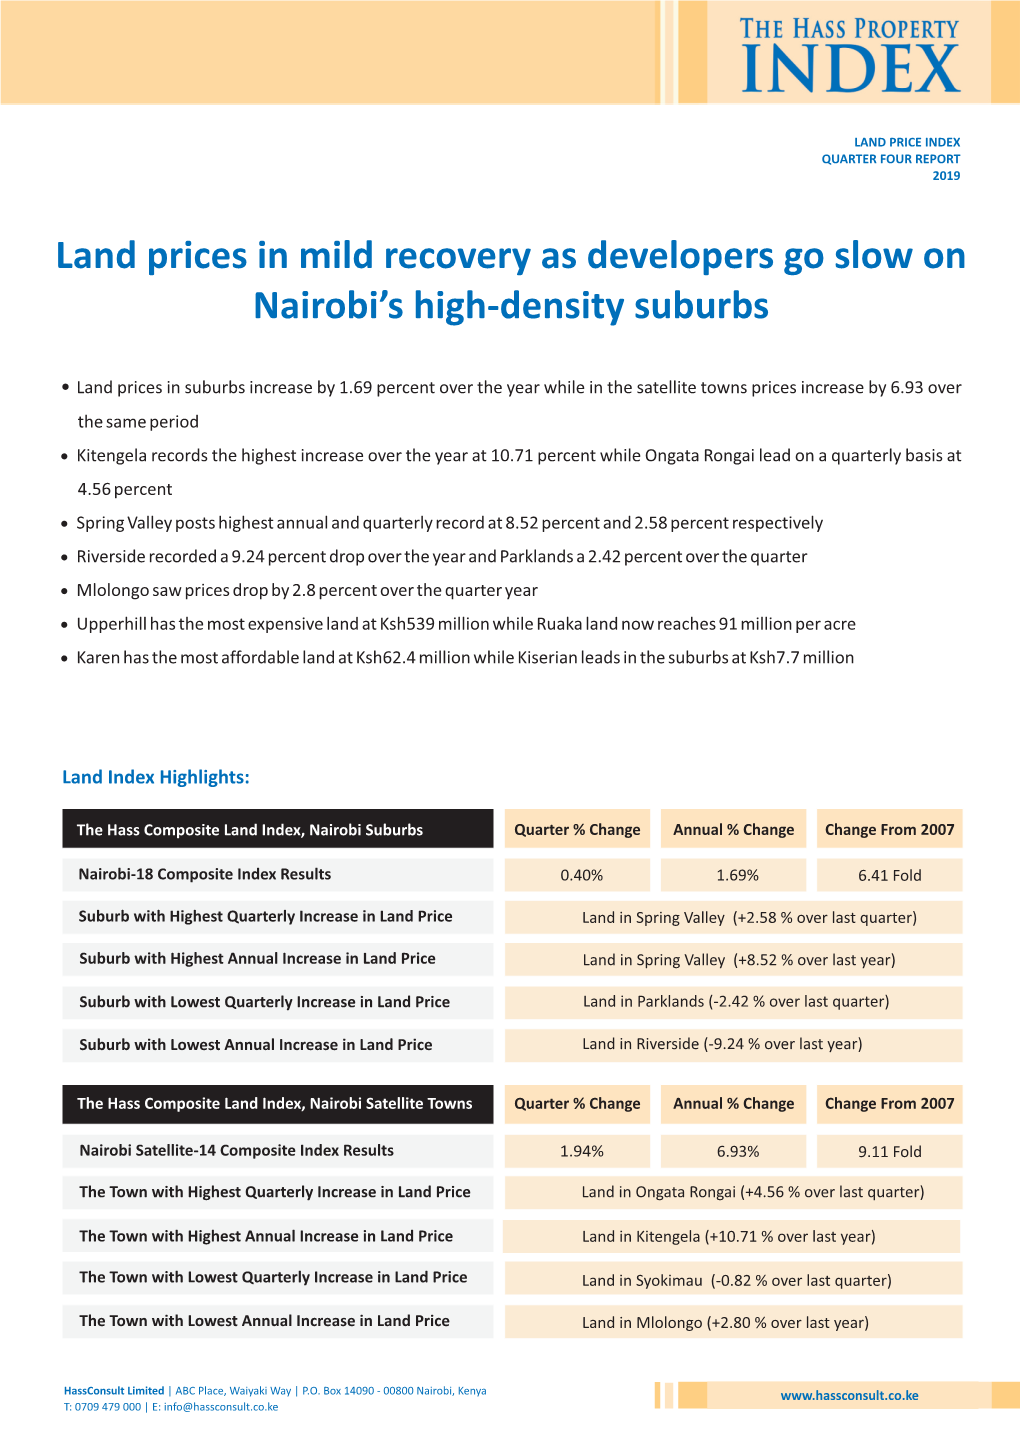 Land Price Index Quarter Four Report 2019